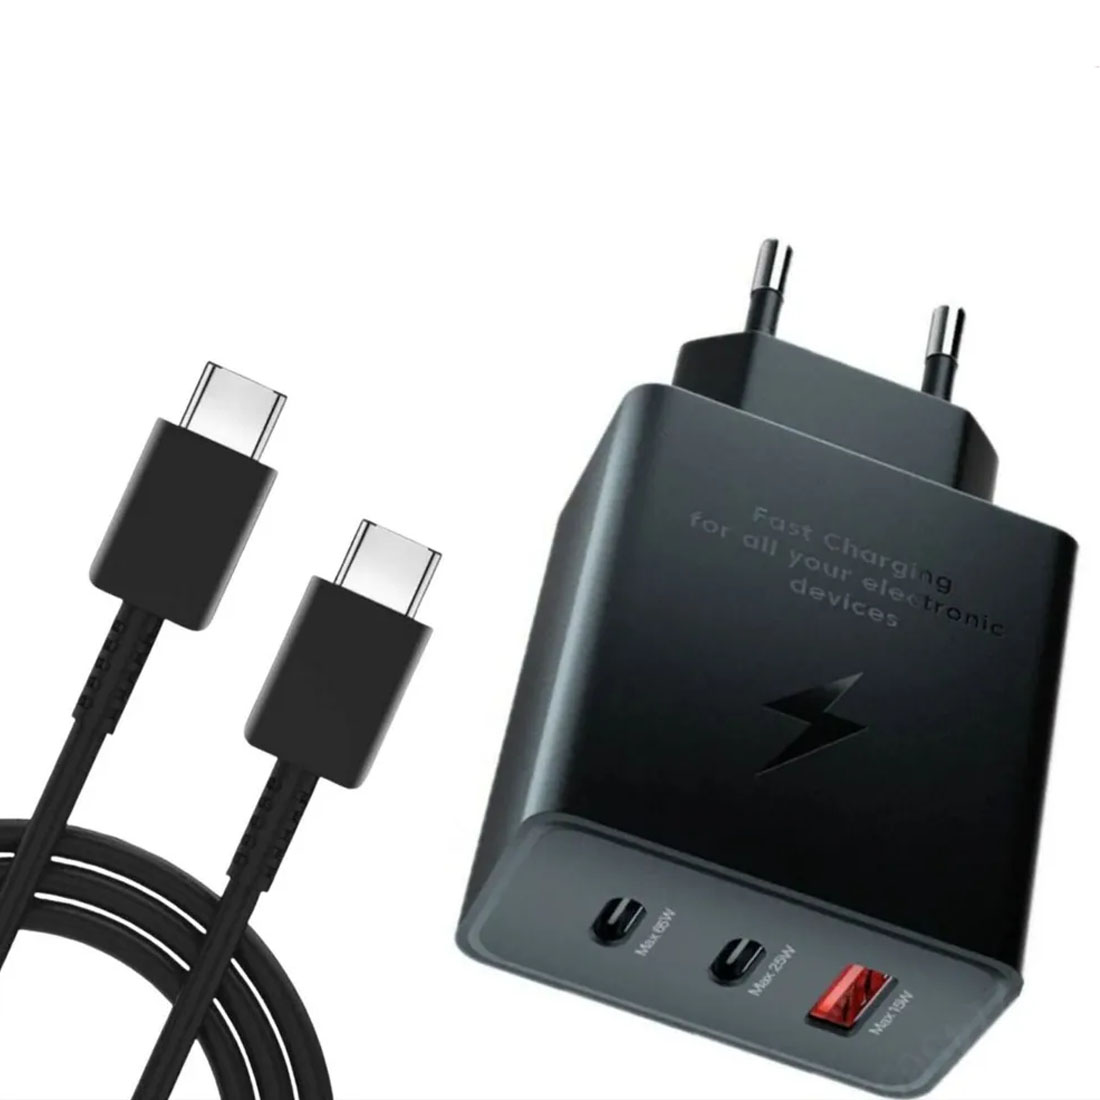 СЗУ (Сетевое зарядное устройство) EP-TA800 65W PD Adapter Trio с кабелем Type C на Type C, 1 Type C 25W, 1 Type C 65W, 1 USB 15W, длина 1 метр, цвет черный